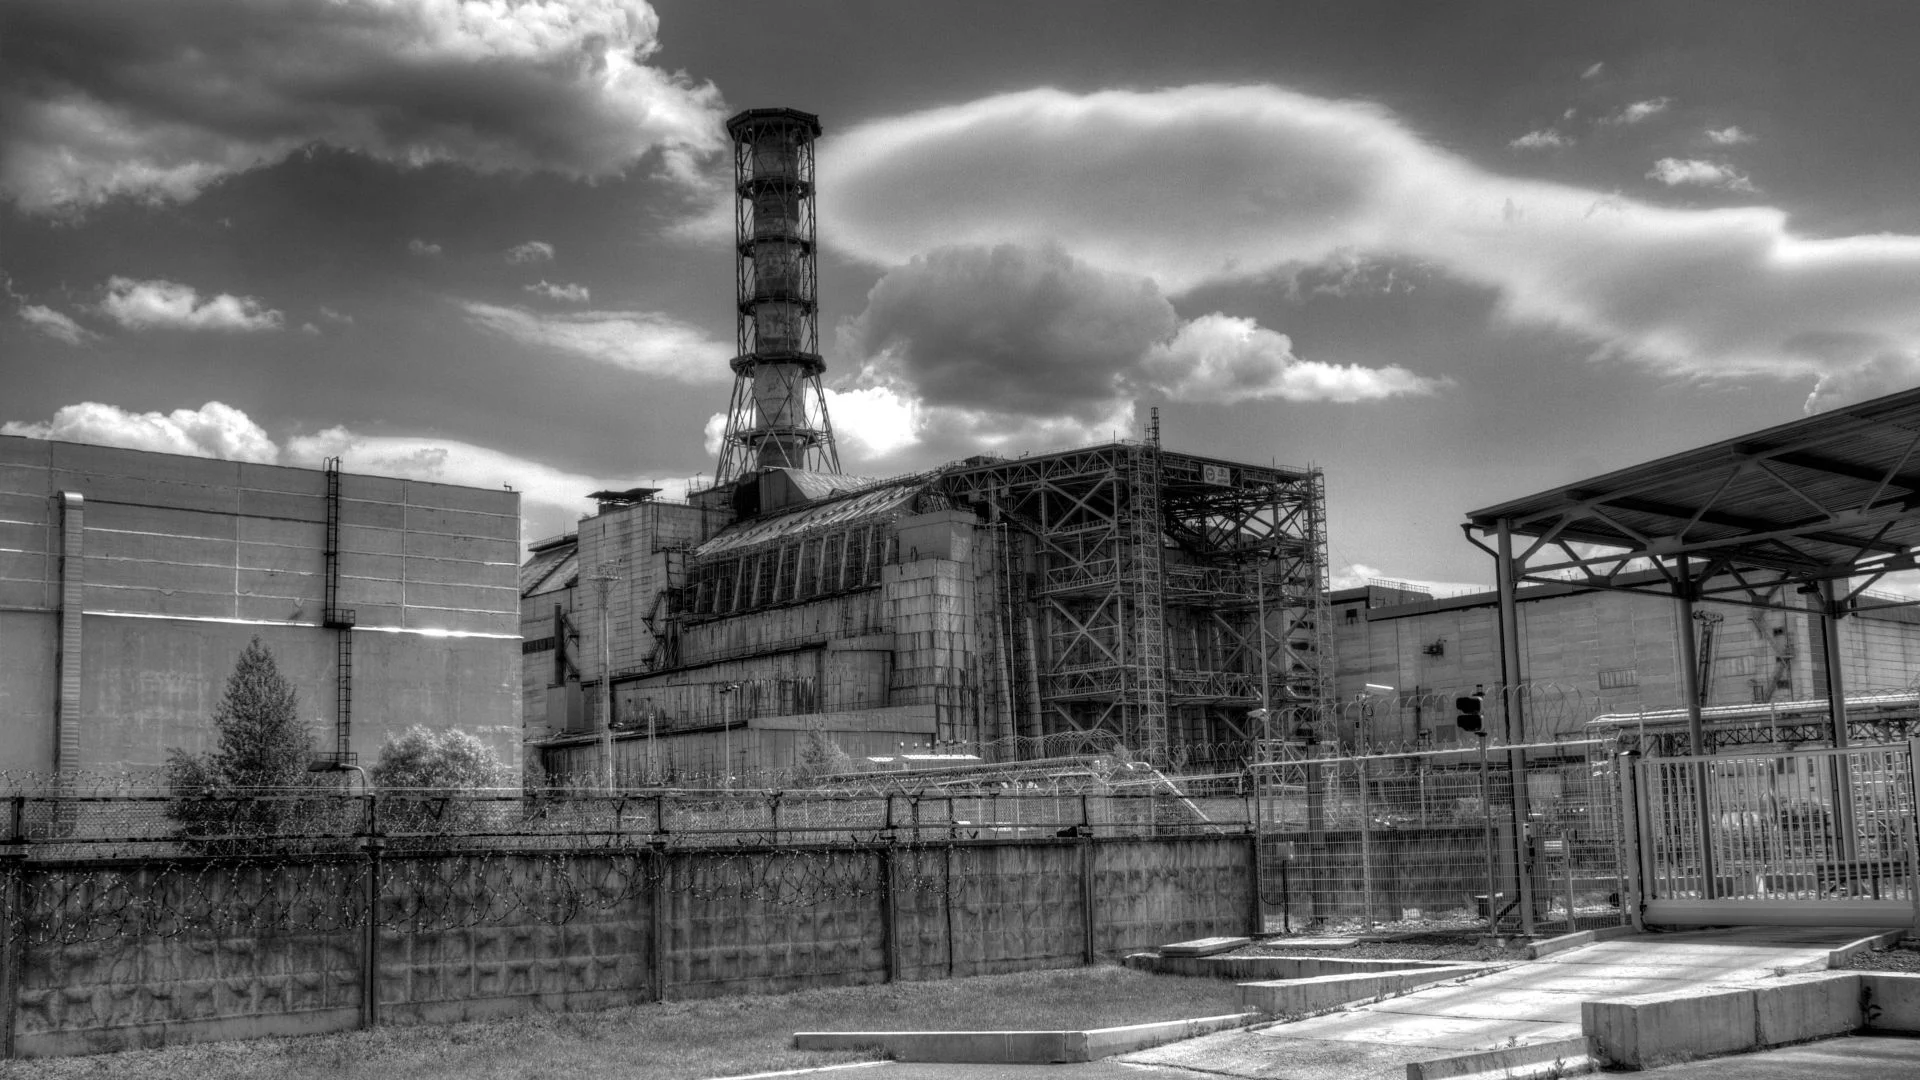 Когда вышла первая серия мини-сериала HBO «Чернобыль», 8 сезон «Игры престолов» был в самом разгаре. Финал самого дорого фэнтези-шоу в истории тогда как раз перевалил за экватор, и многим стало понятно, что впереди ожидают сплошные разочарования. Последнюю серию «Игры престолов» ругали, кажется, вообще все, но HBO как будто намеренно выпустила еще и «Чернобыль». Ведь последний оказался лучшим сериалом весны 2019 года.